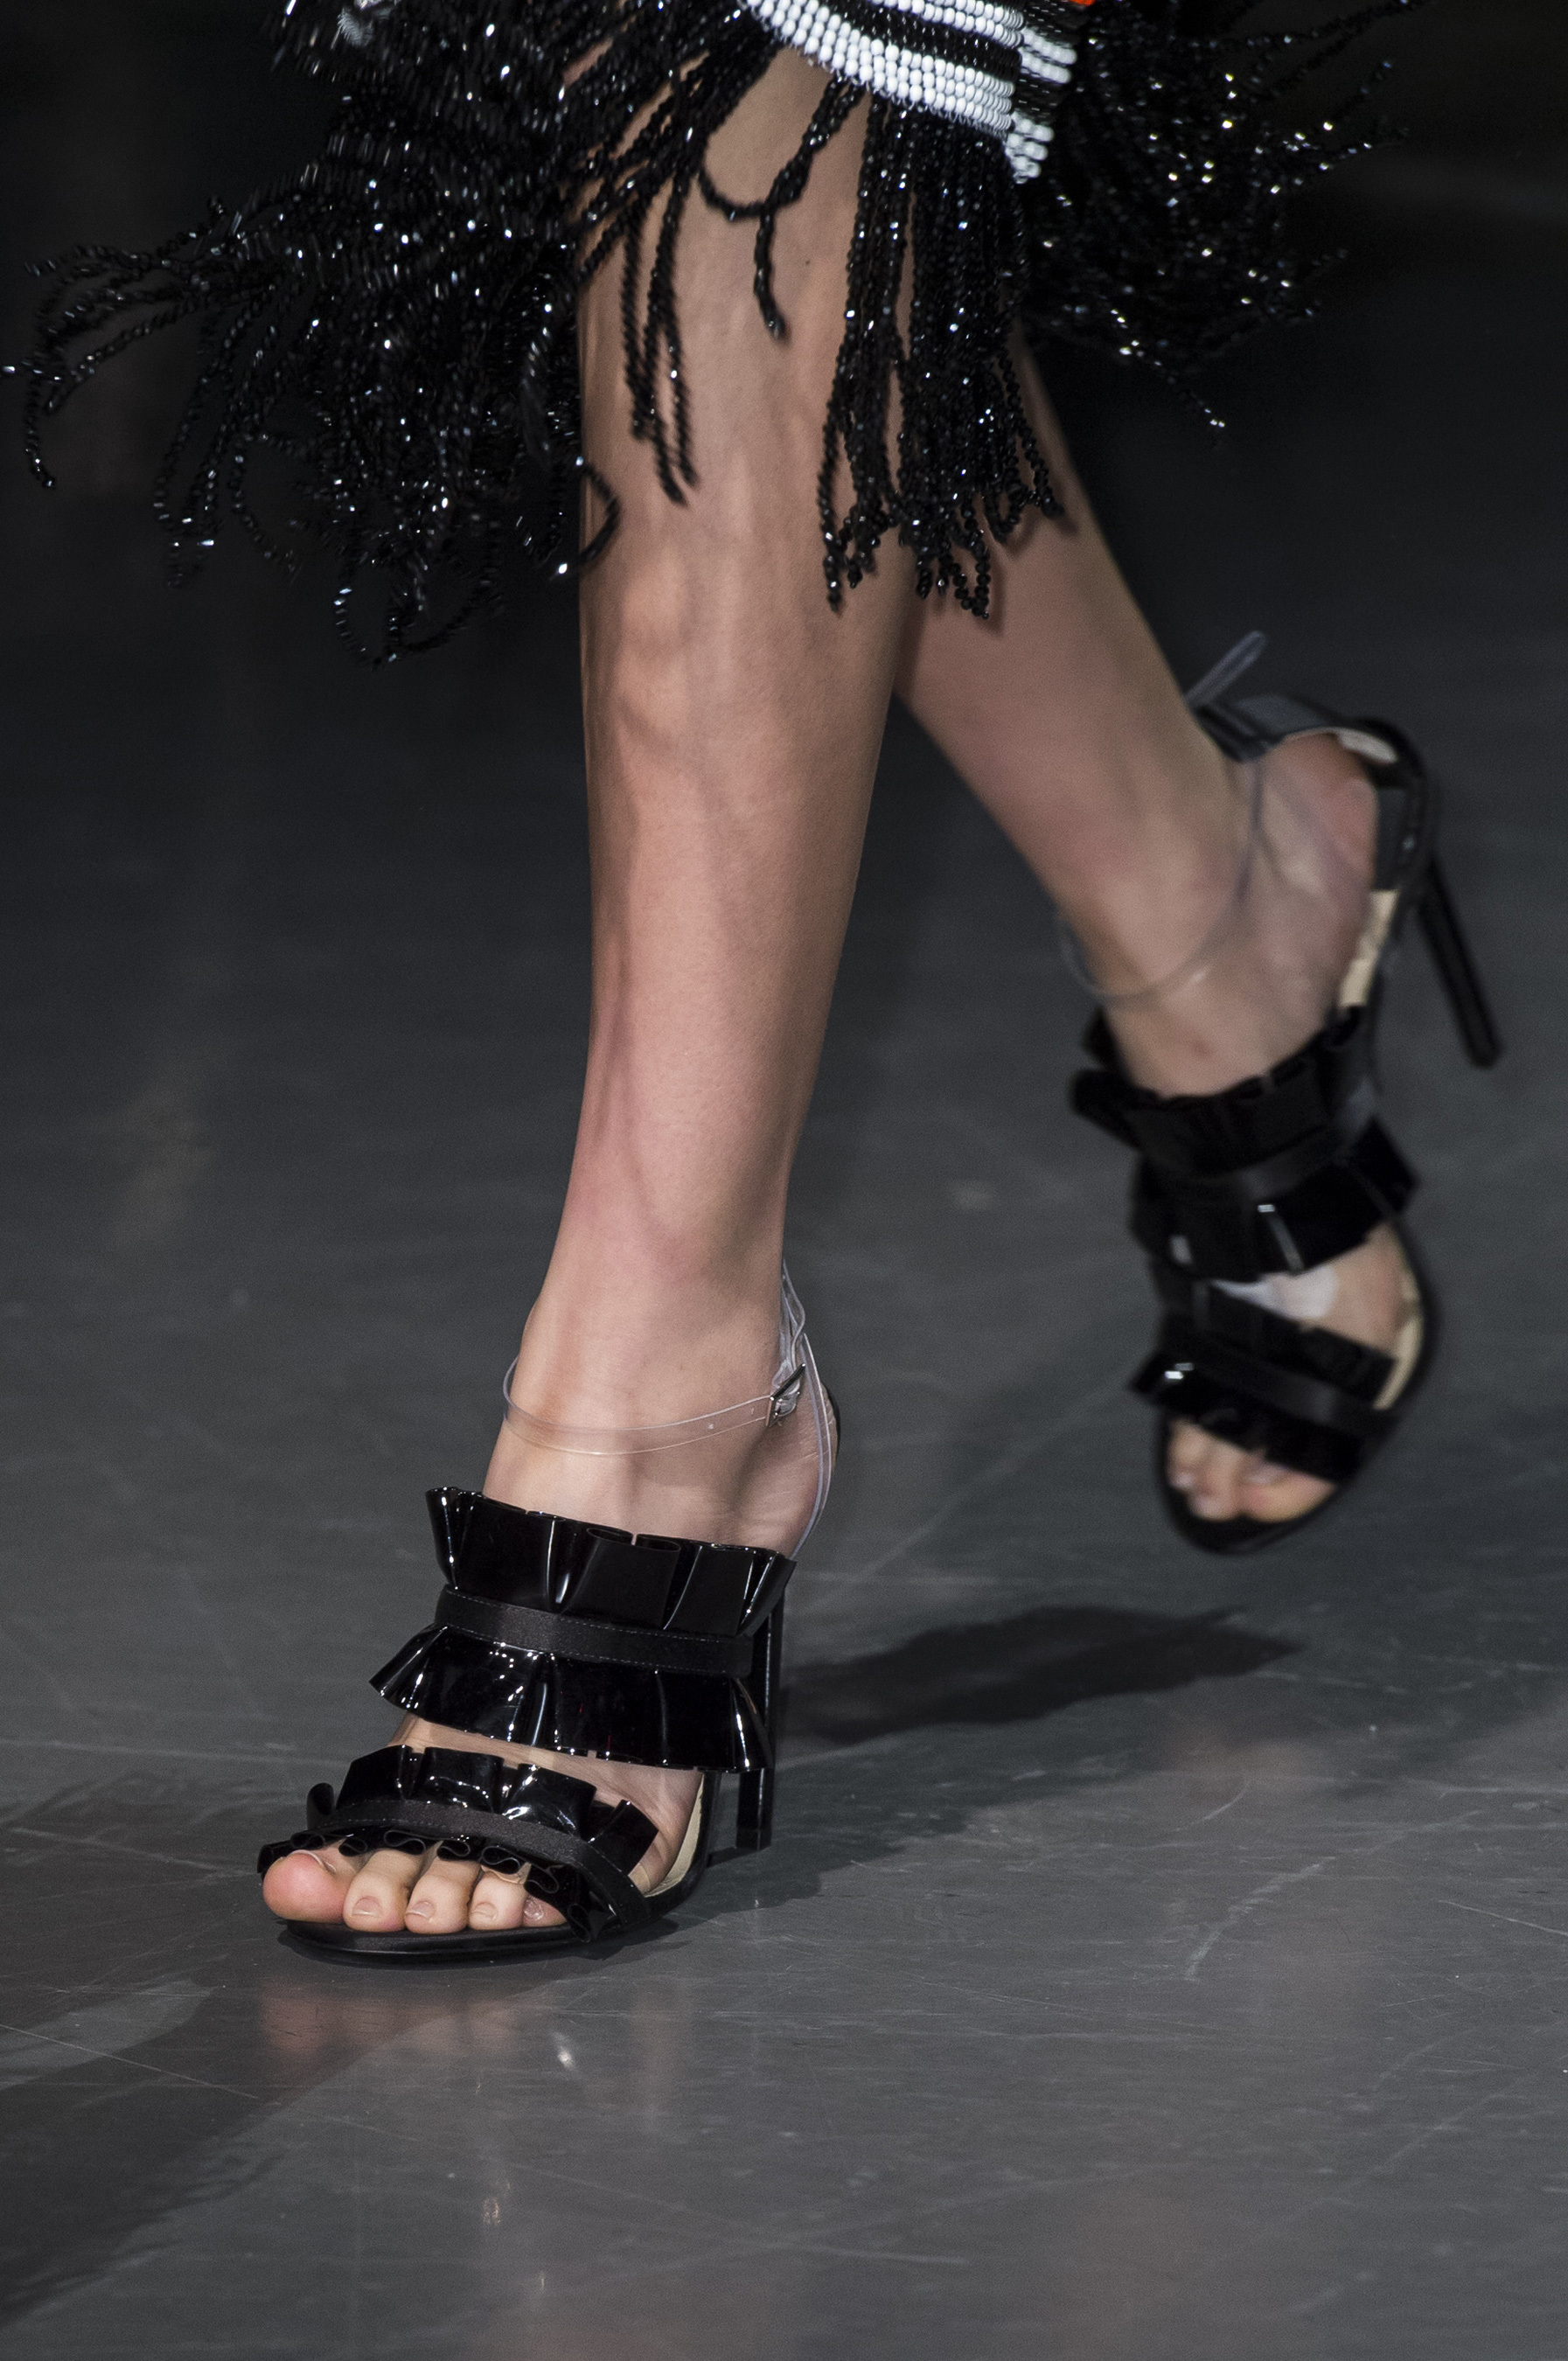 Jiali Zhao's Feet - I piedi di Jiali Zhao - Celebrities Feet 2022